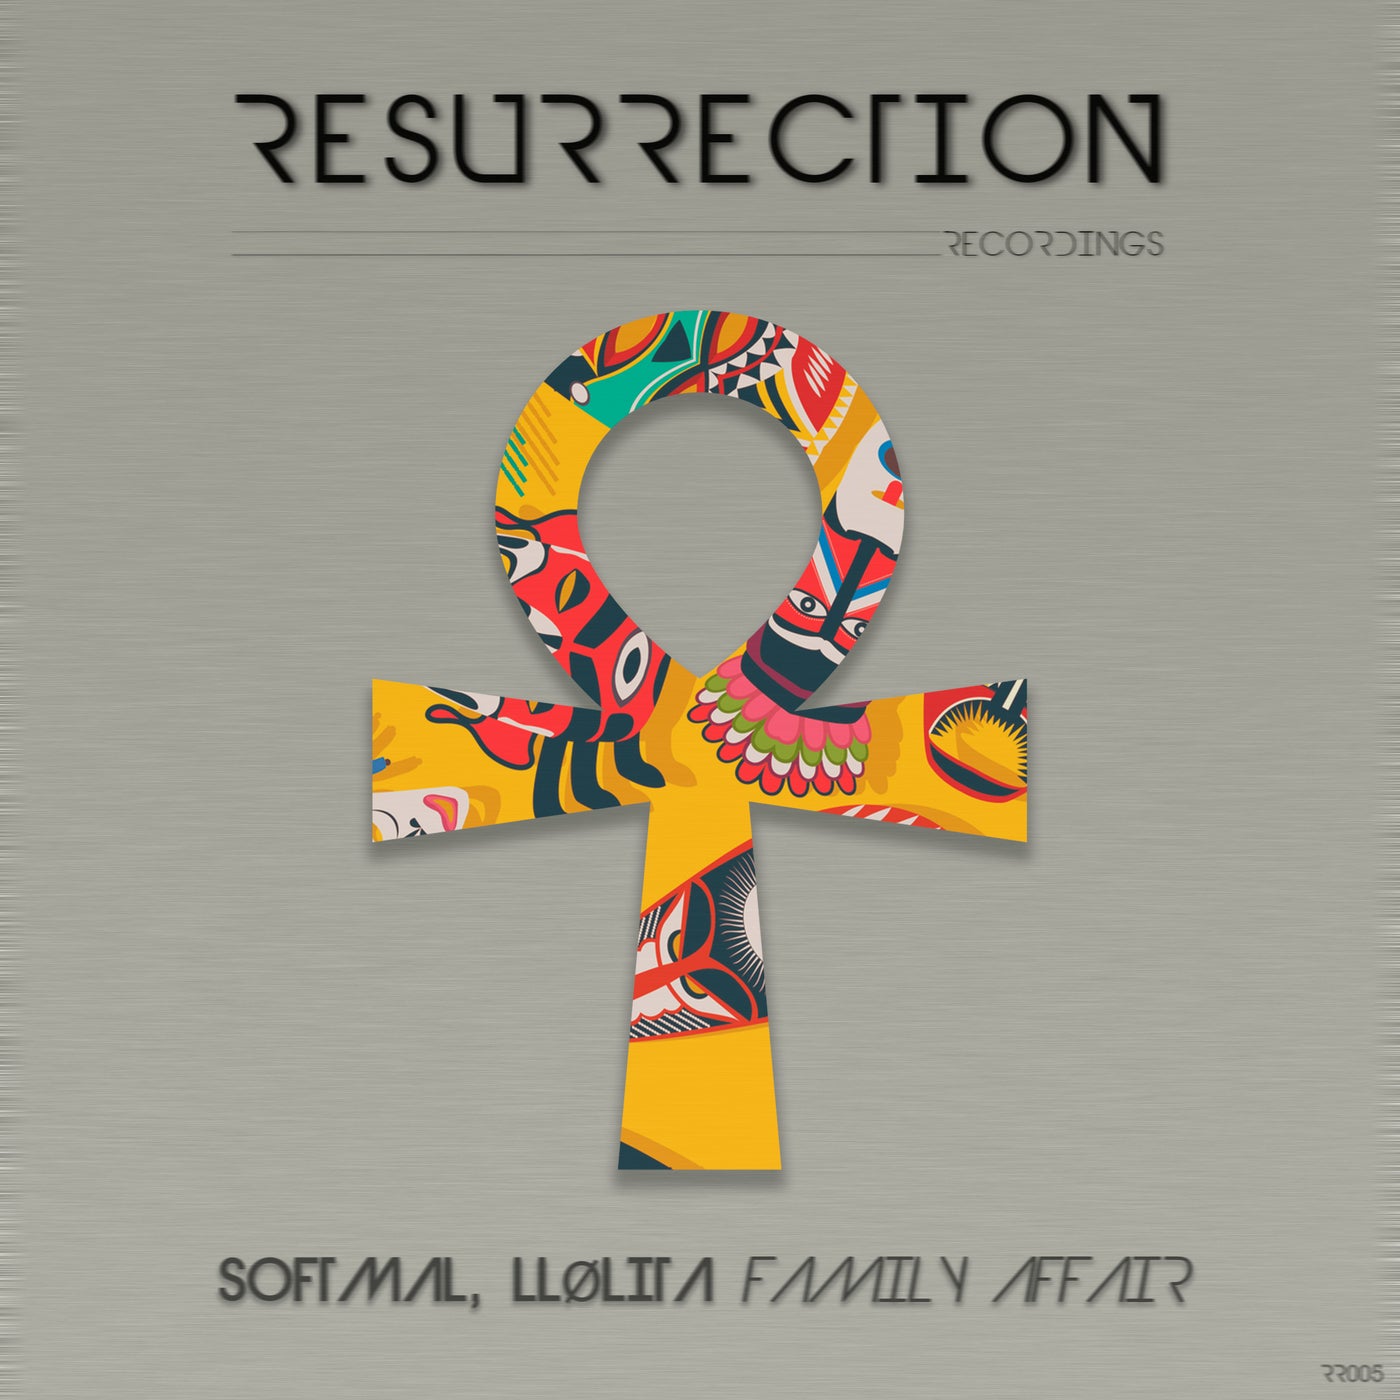 Softmal, LLølita - Family Affair (Original Mix)